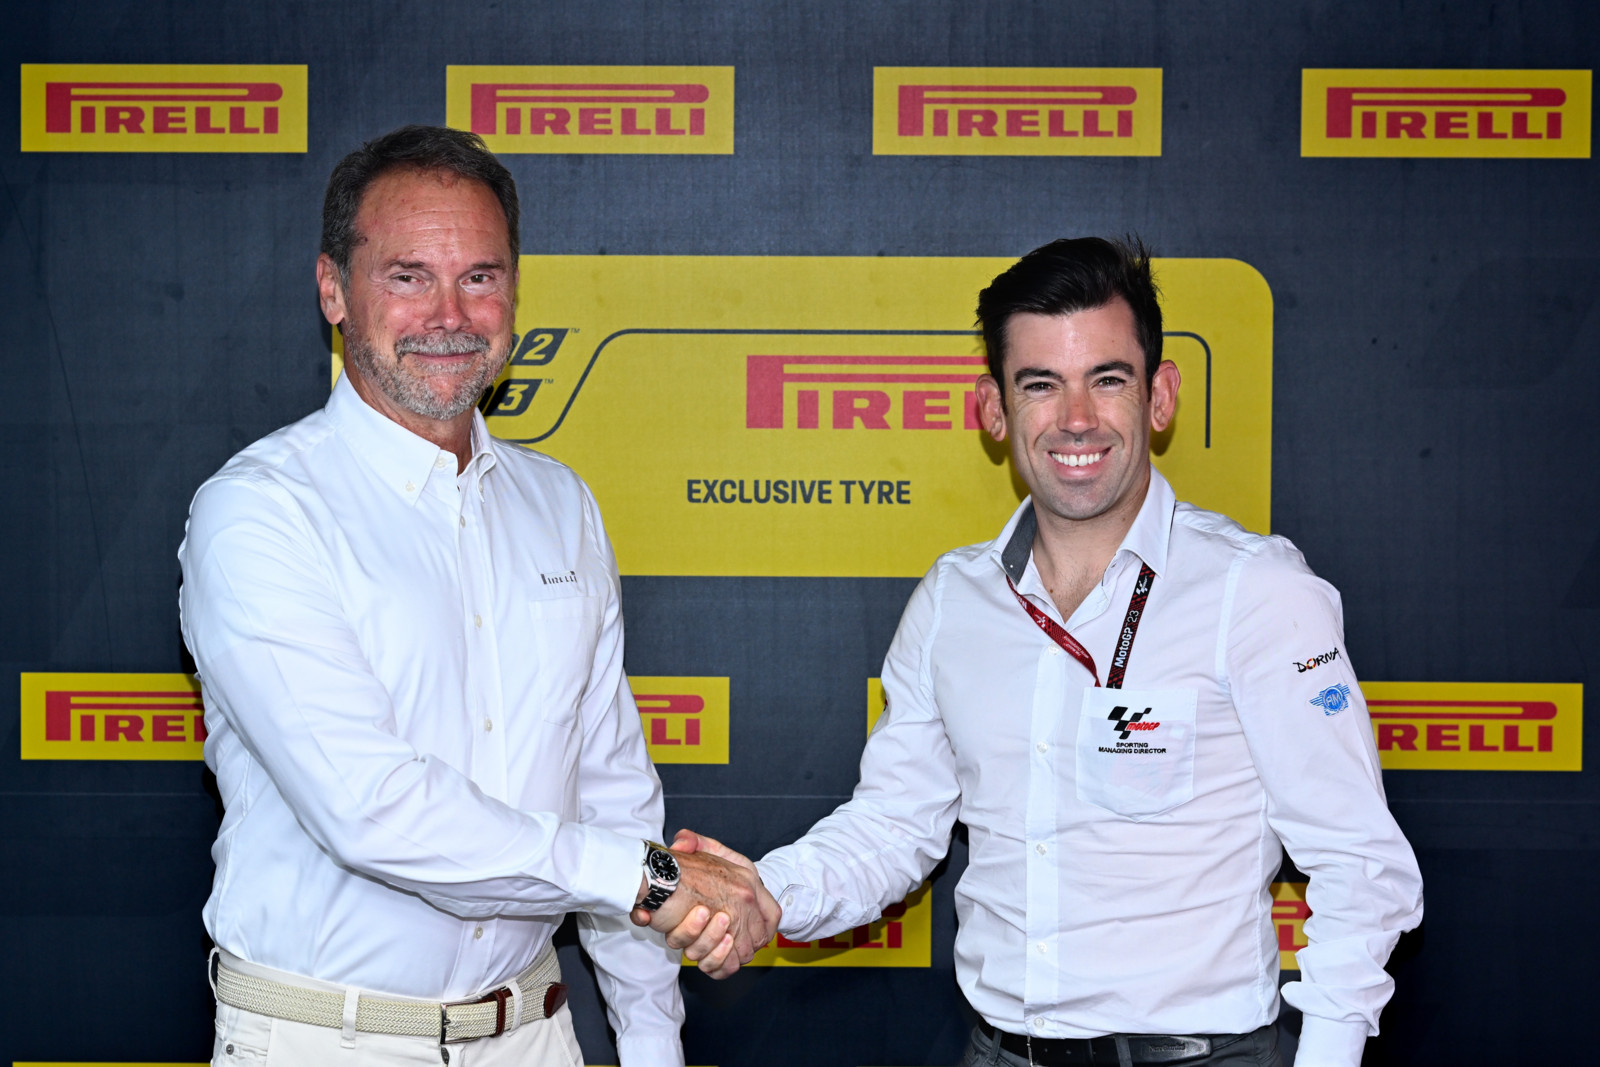 Giorgio Barbier (Pirelli) und Carlos Ezpleleta (Dorna Sports) freuen sich auf die kommende Partnerschaft.